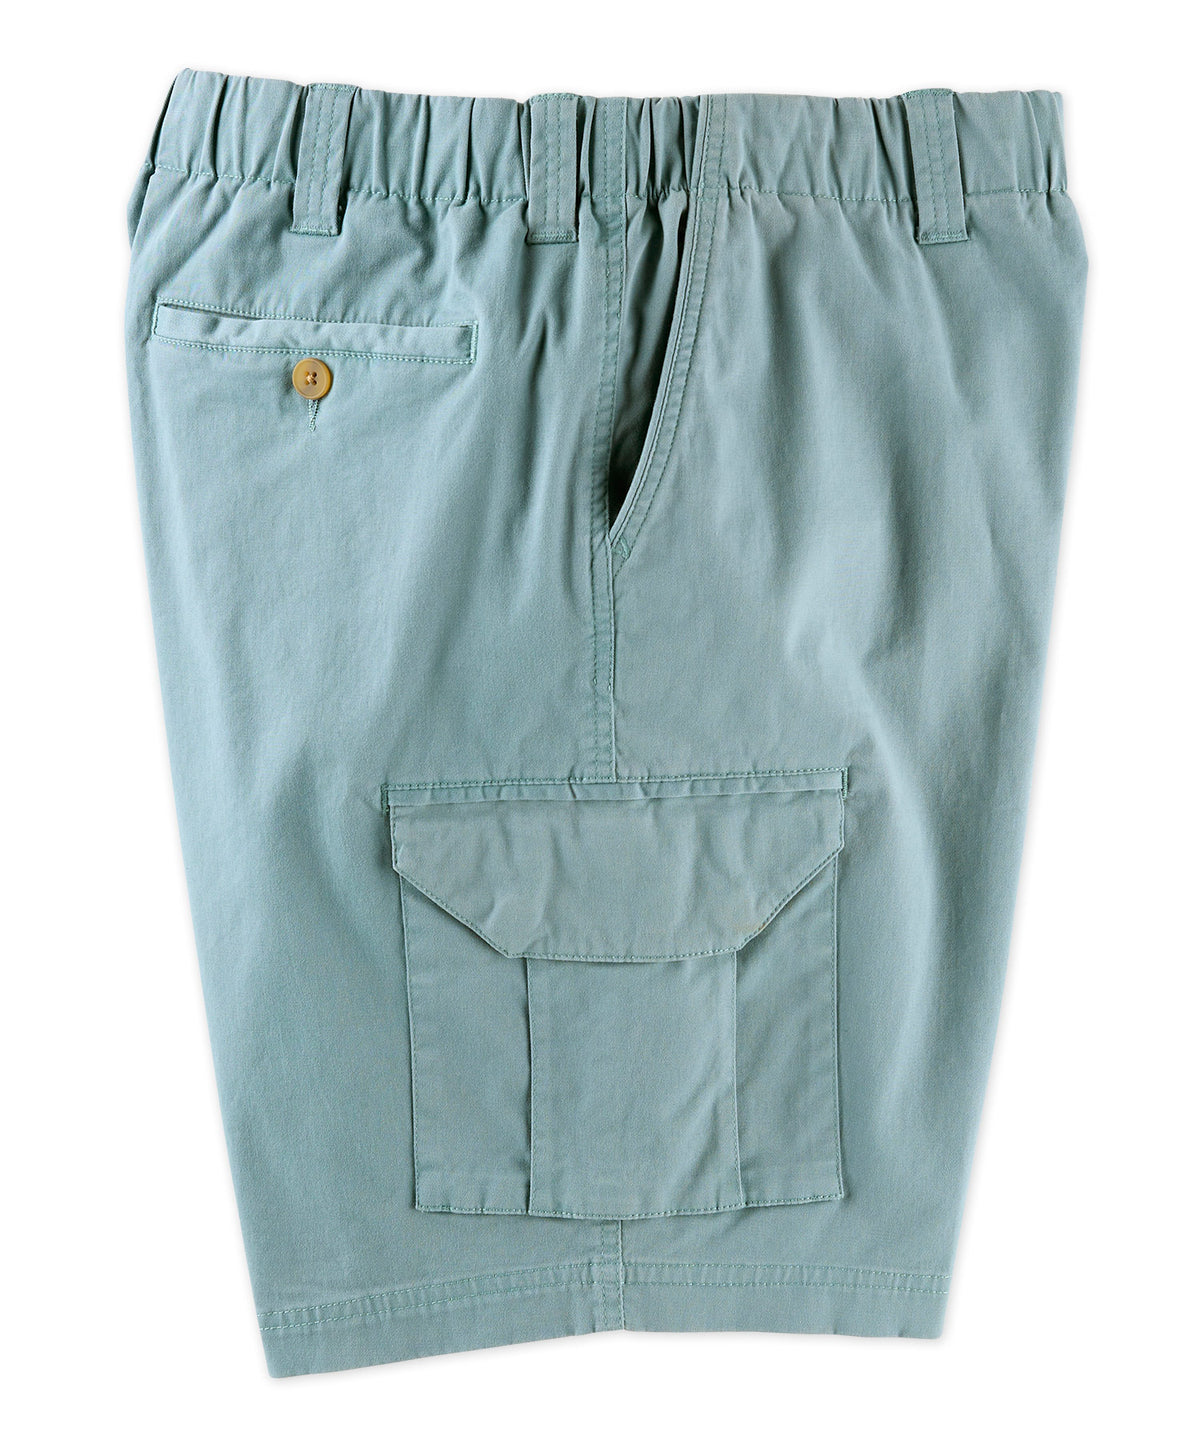 Pantaloncini cargo elasticizzati in vita elasticizzata in twill elasticizzato Westport 1989, Big & Tall